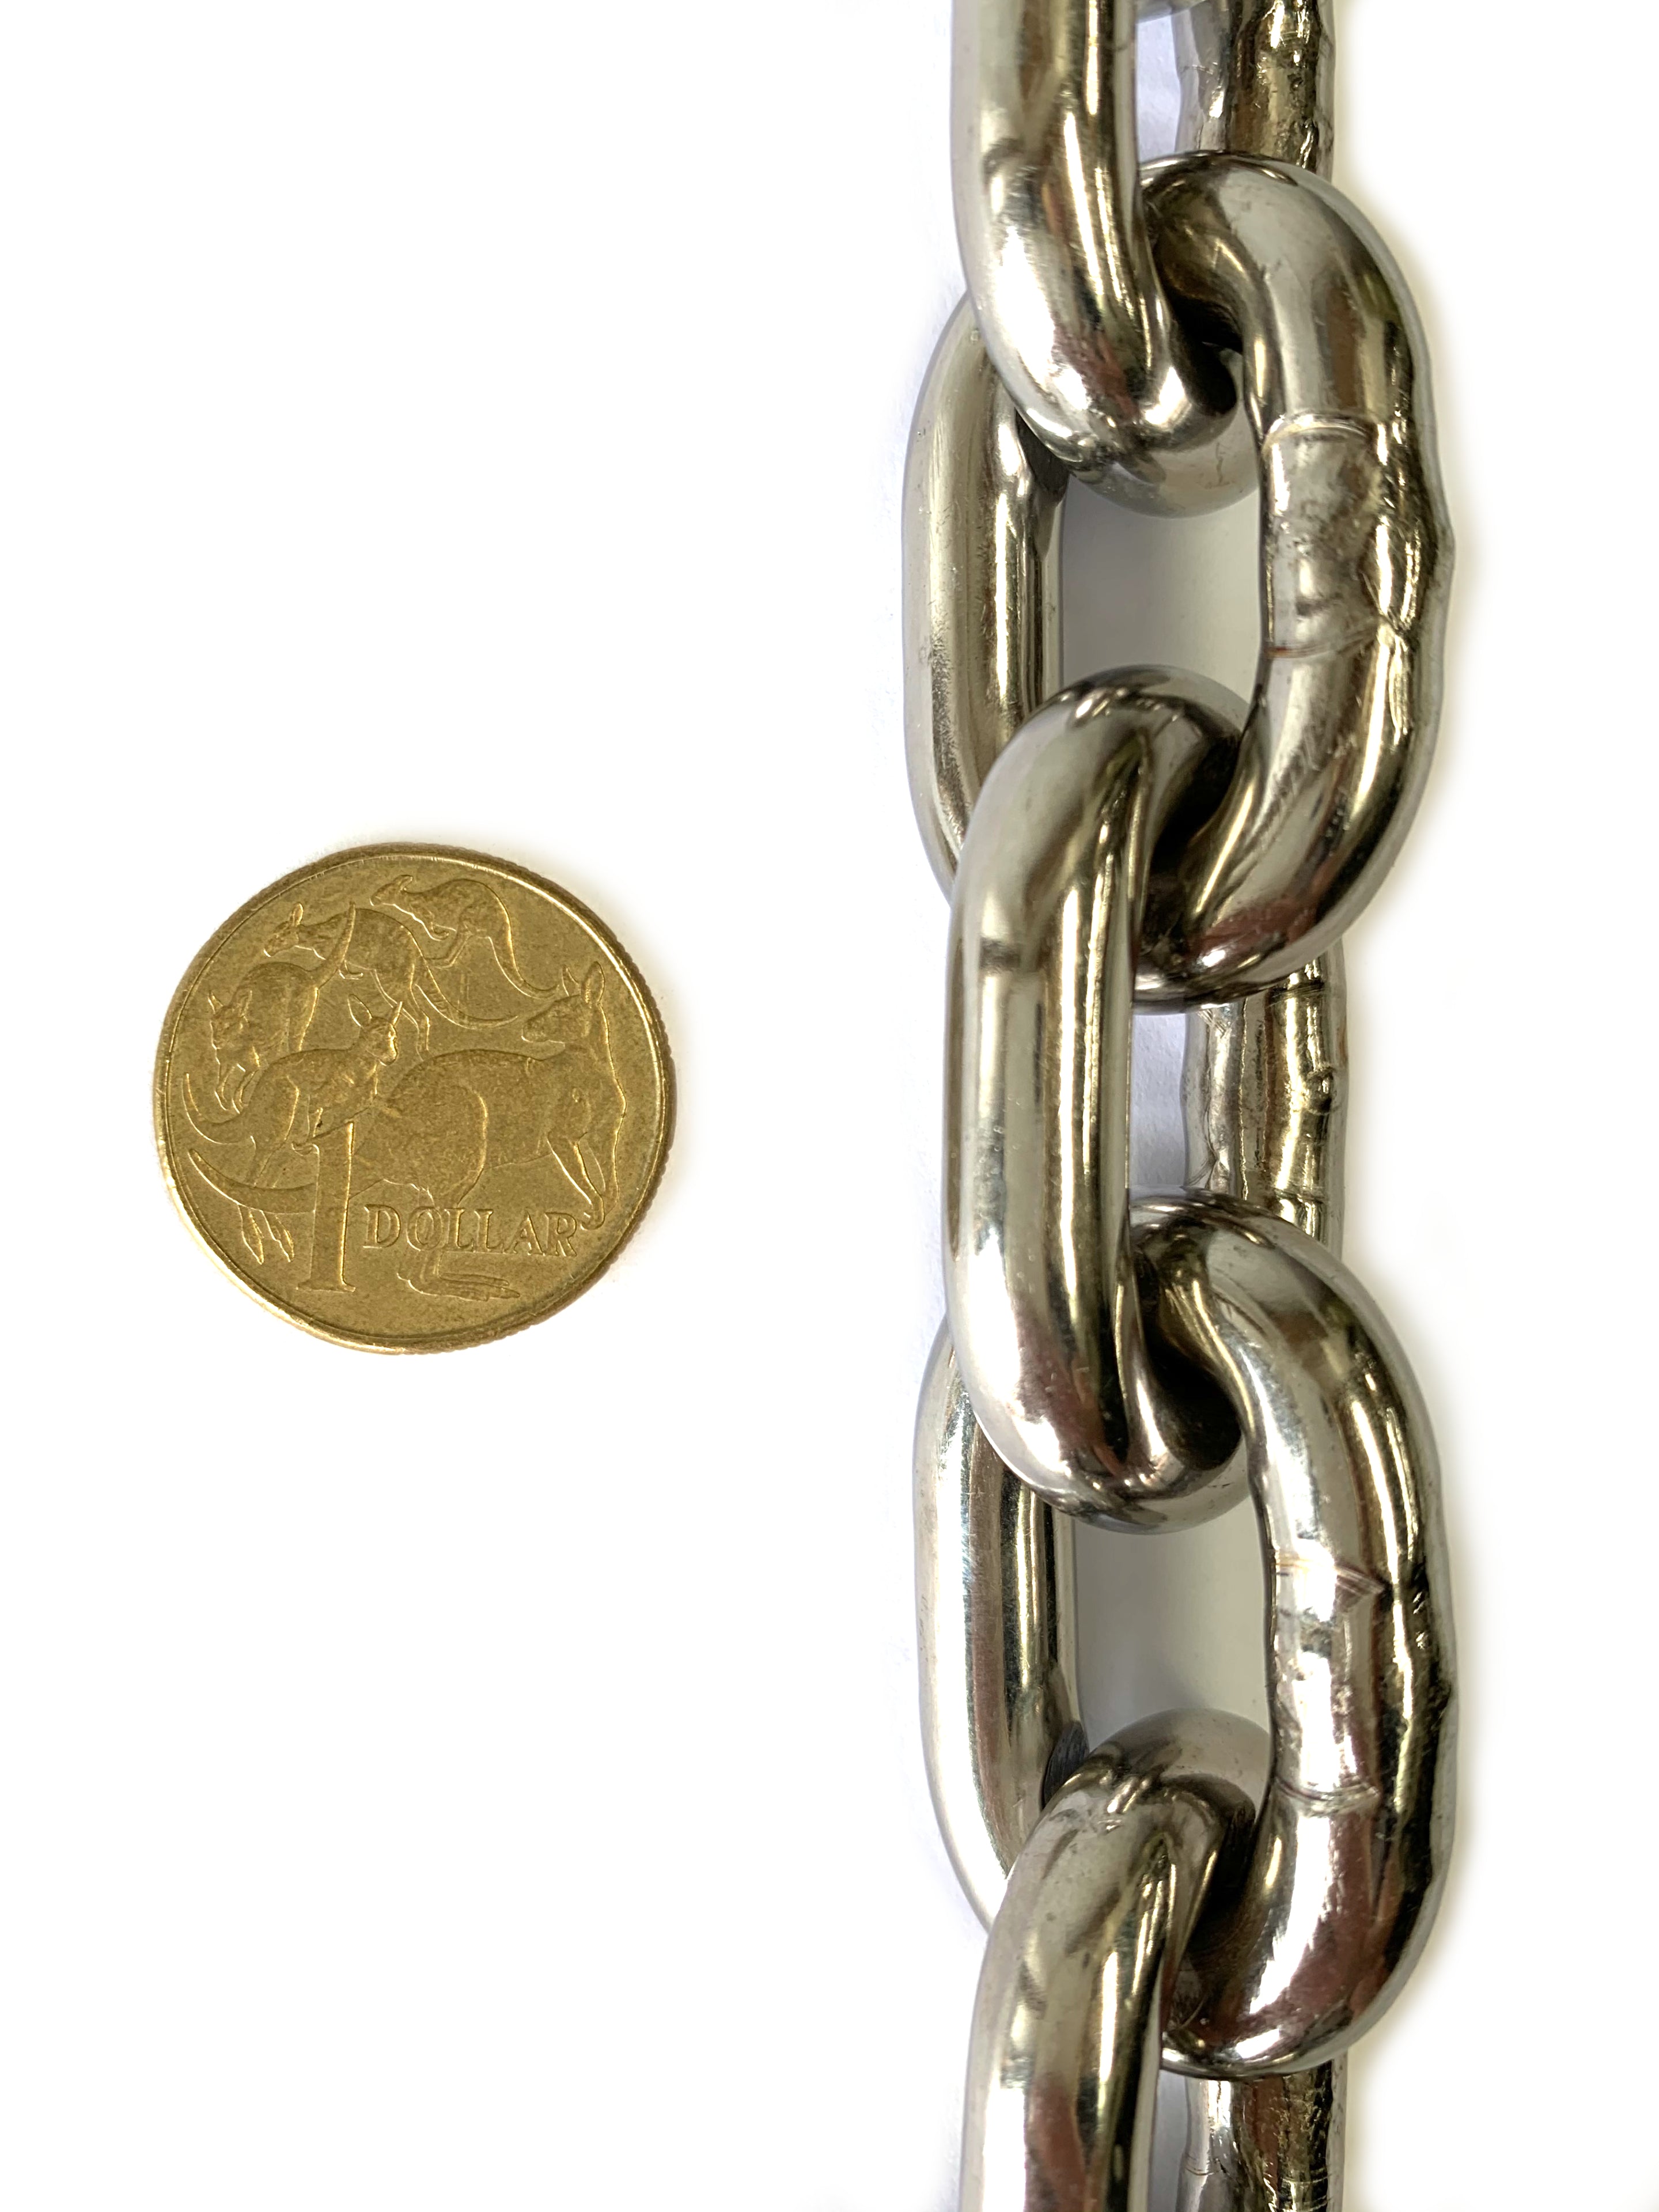 8mm Stainless Steel Short Link Welded Chain. Bulk buy 25kg bucket. Australia